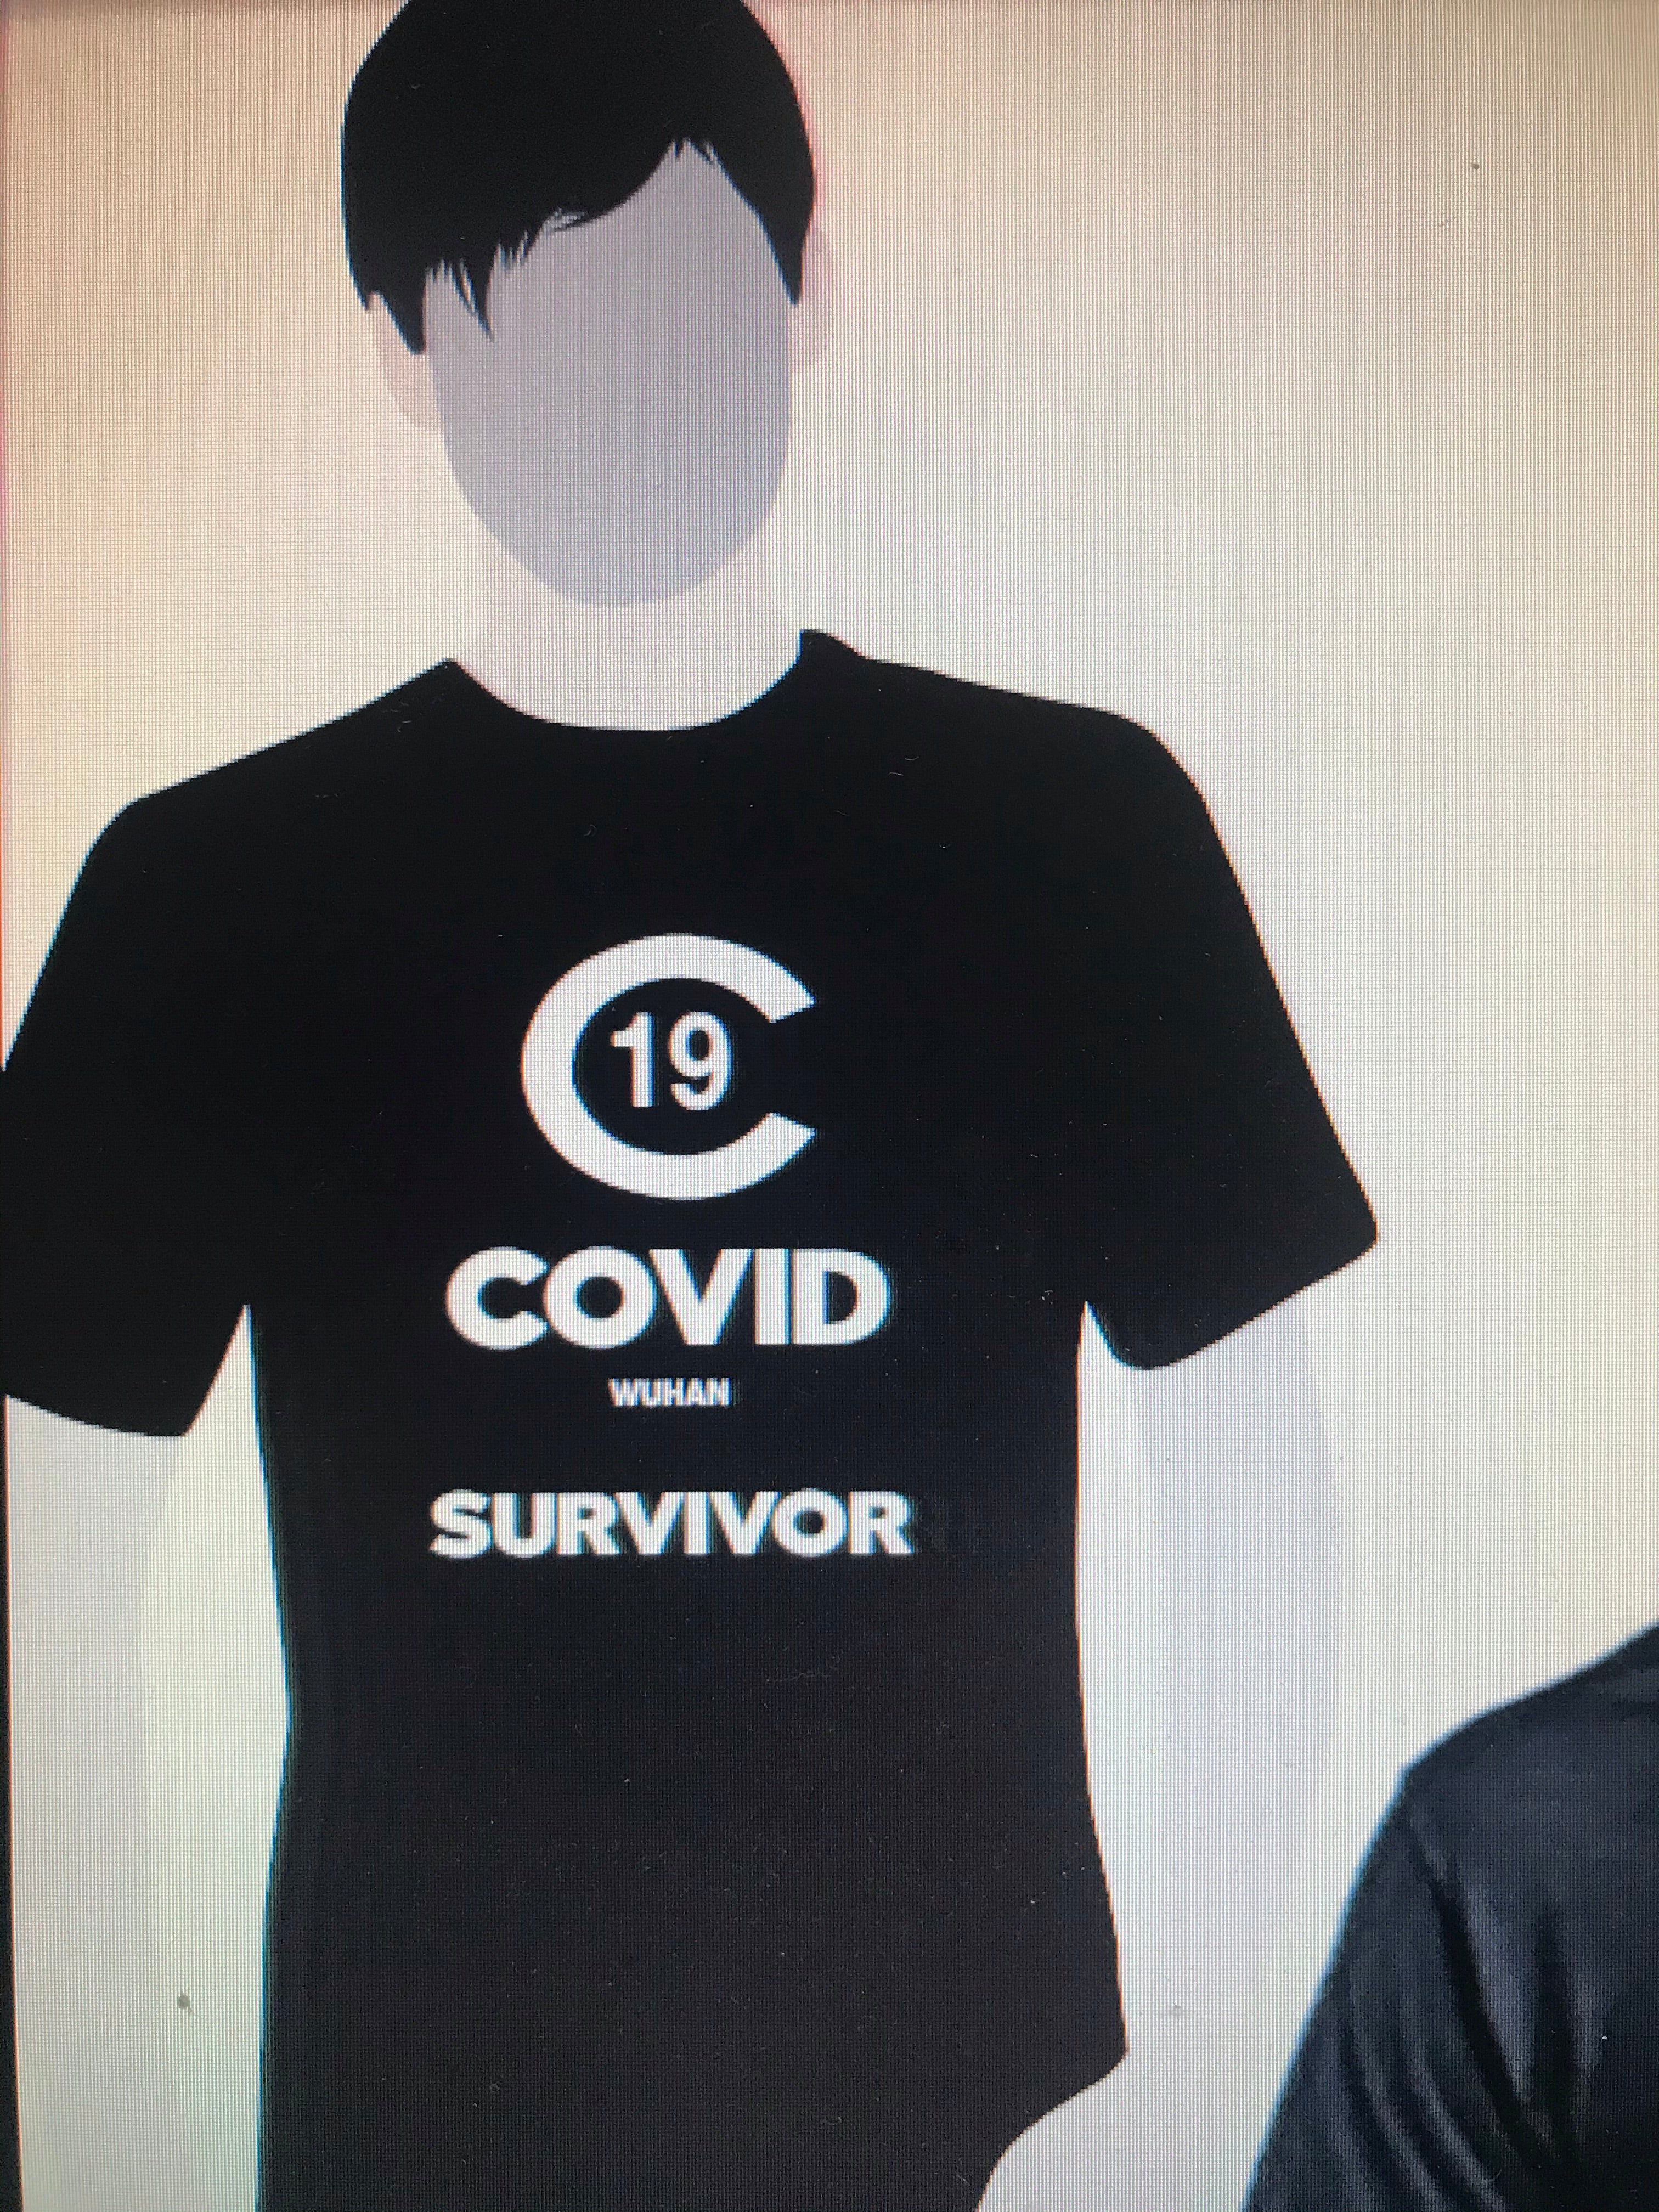 C19 Covid Survivor Tee Black  Limited Edition..